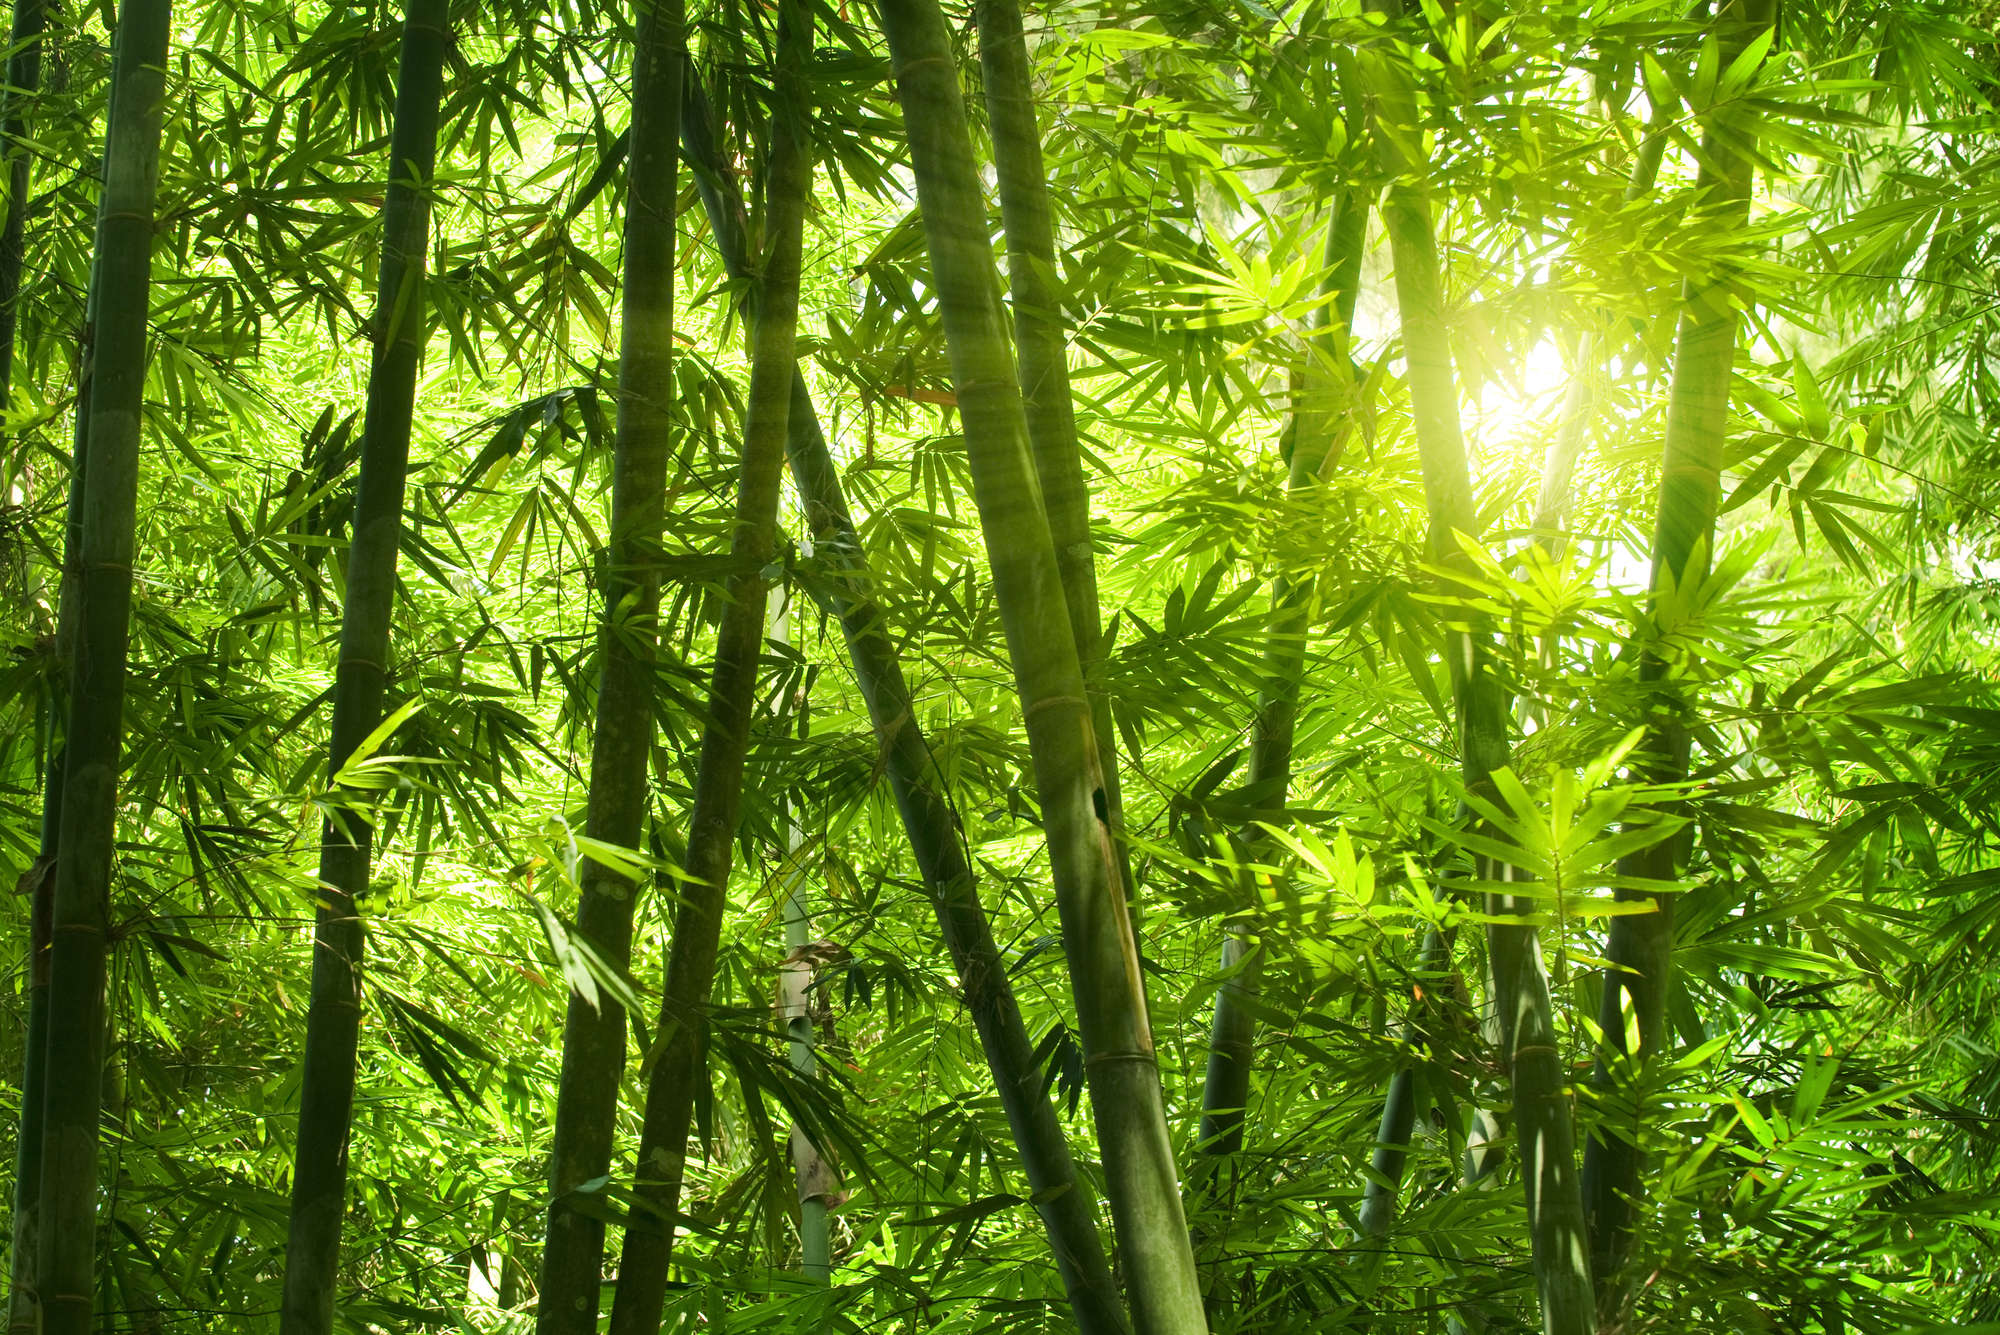             Fototapete Bambus und Blätter – Mattes Glattvlies
        